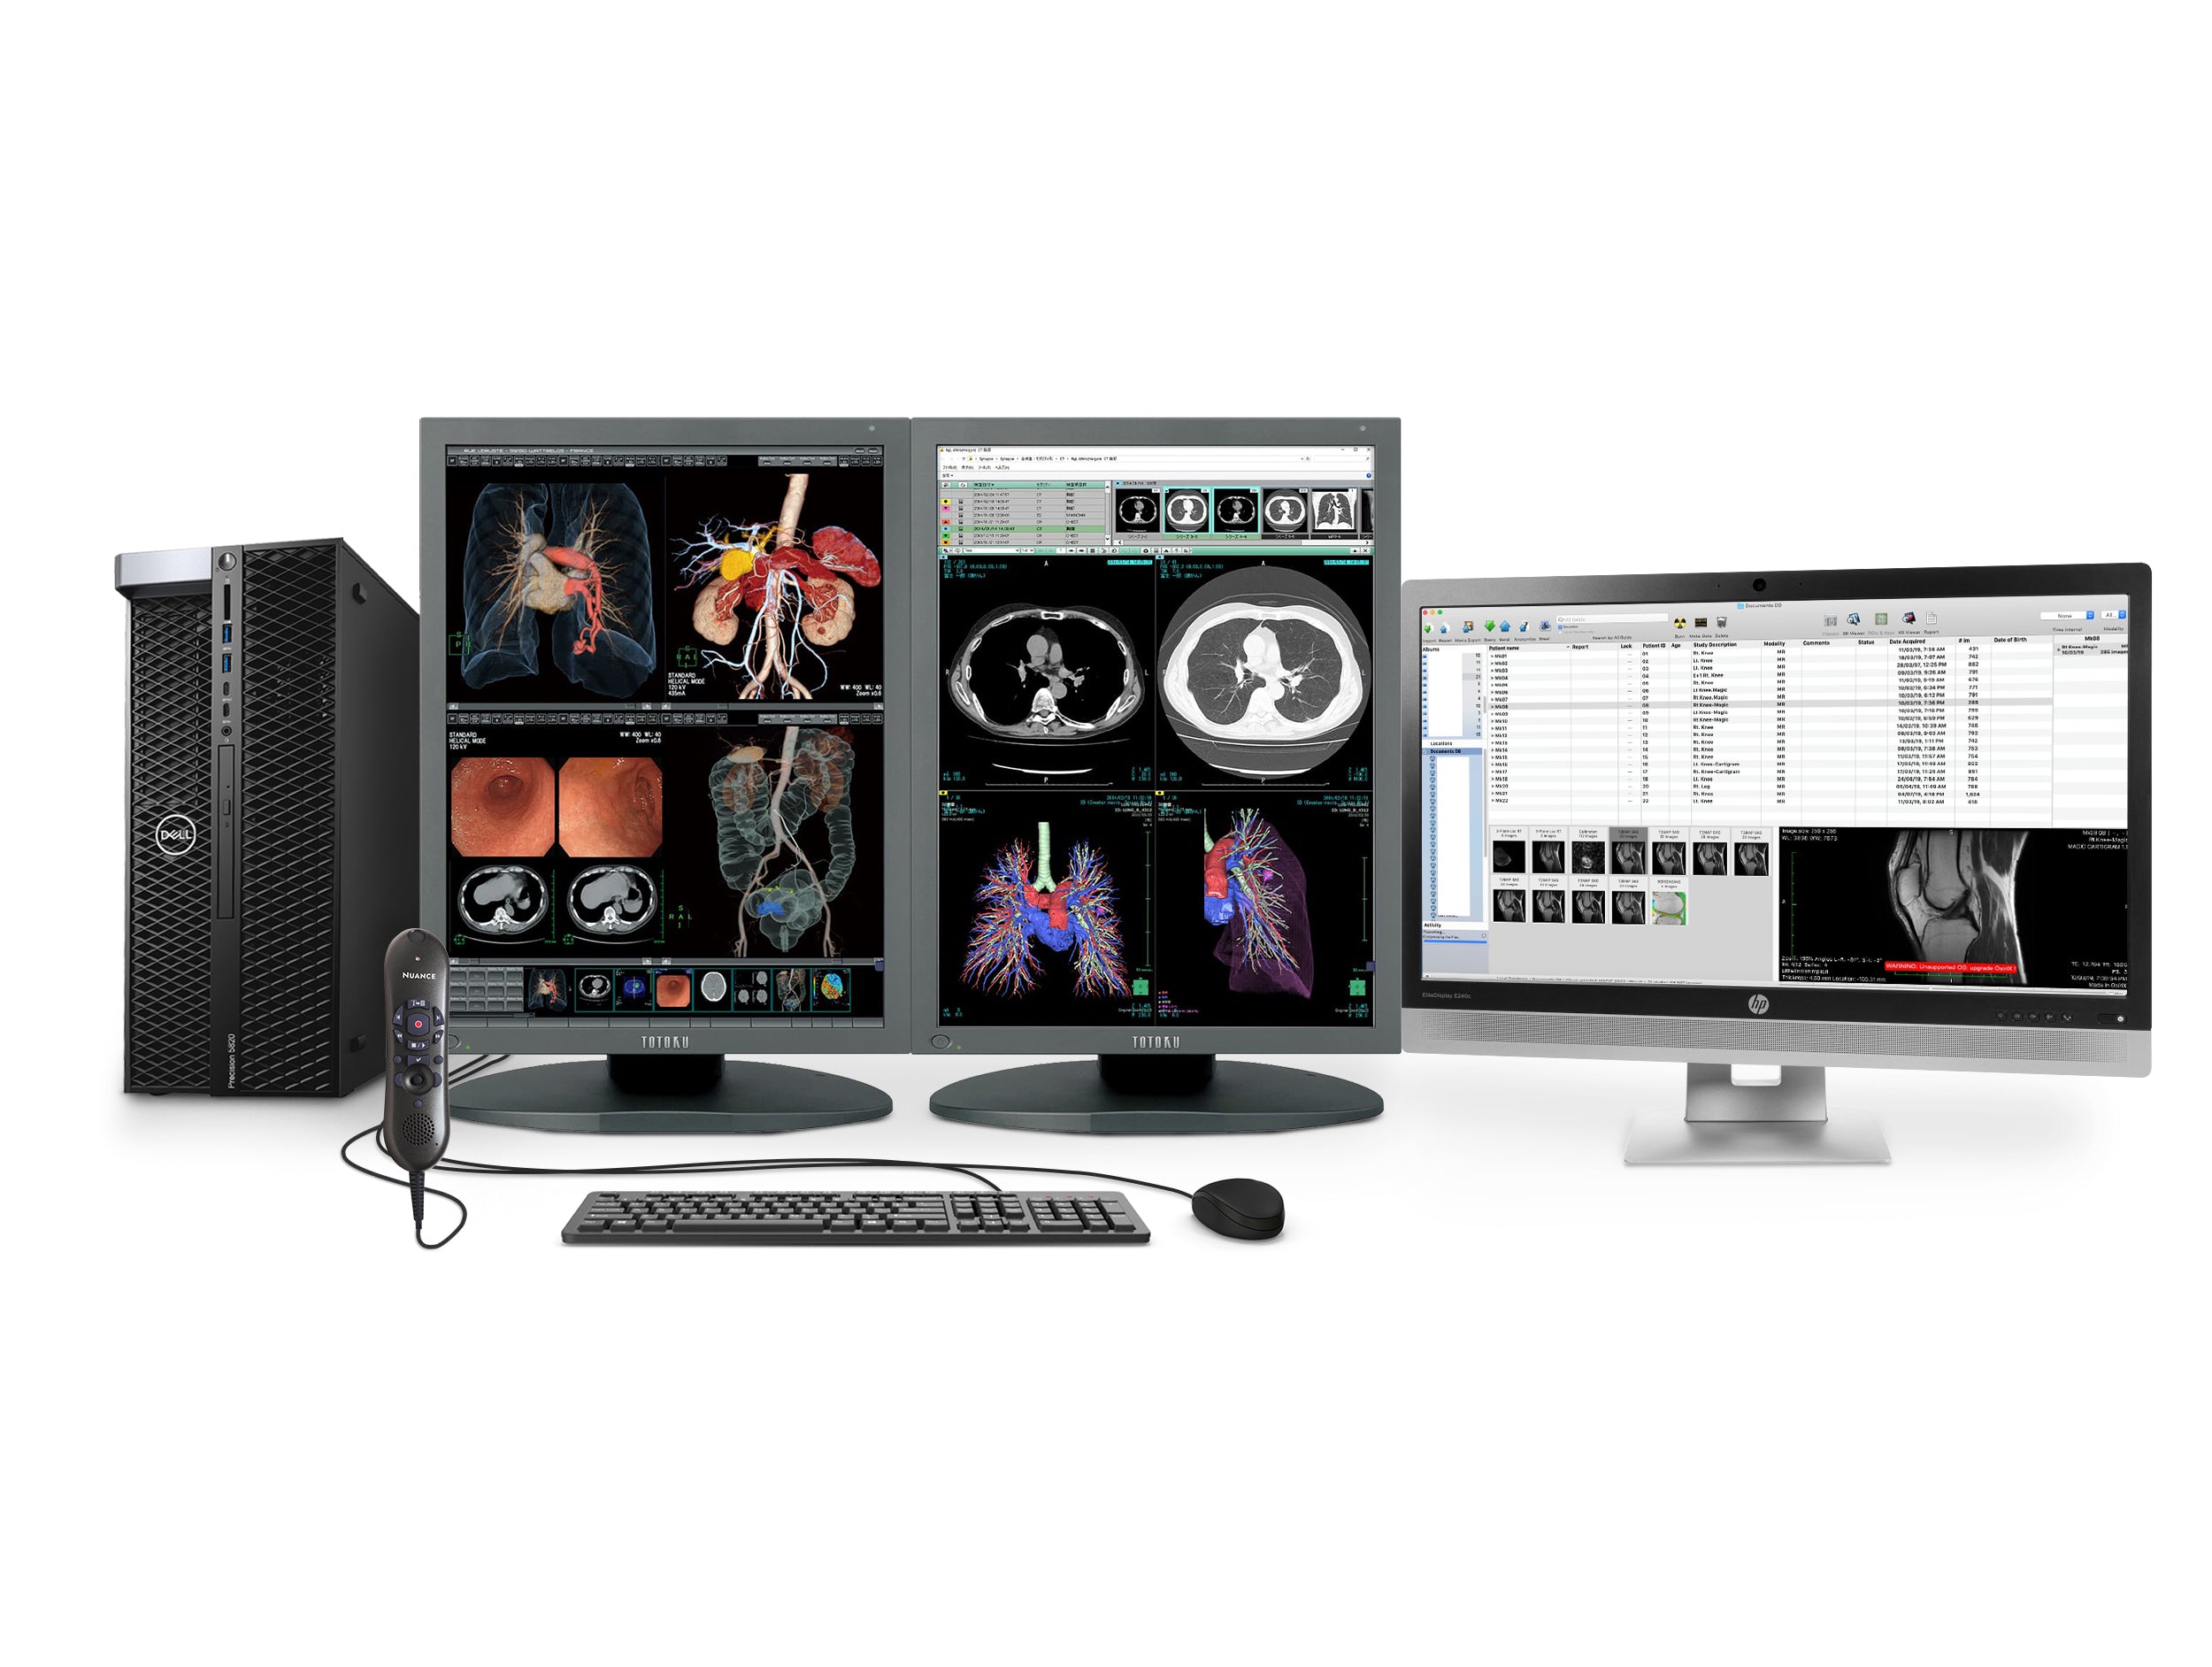 Station complète de radiologie générale PACS | Écrans LED couleur Eizo 4MP | Poste de travail Dell